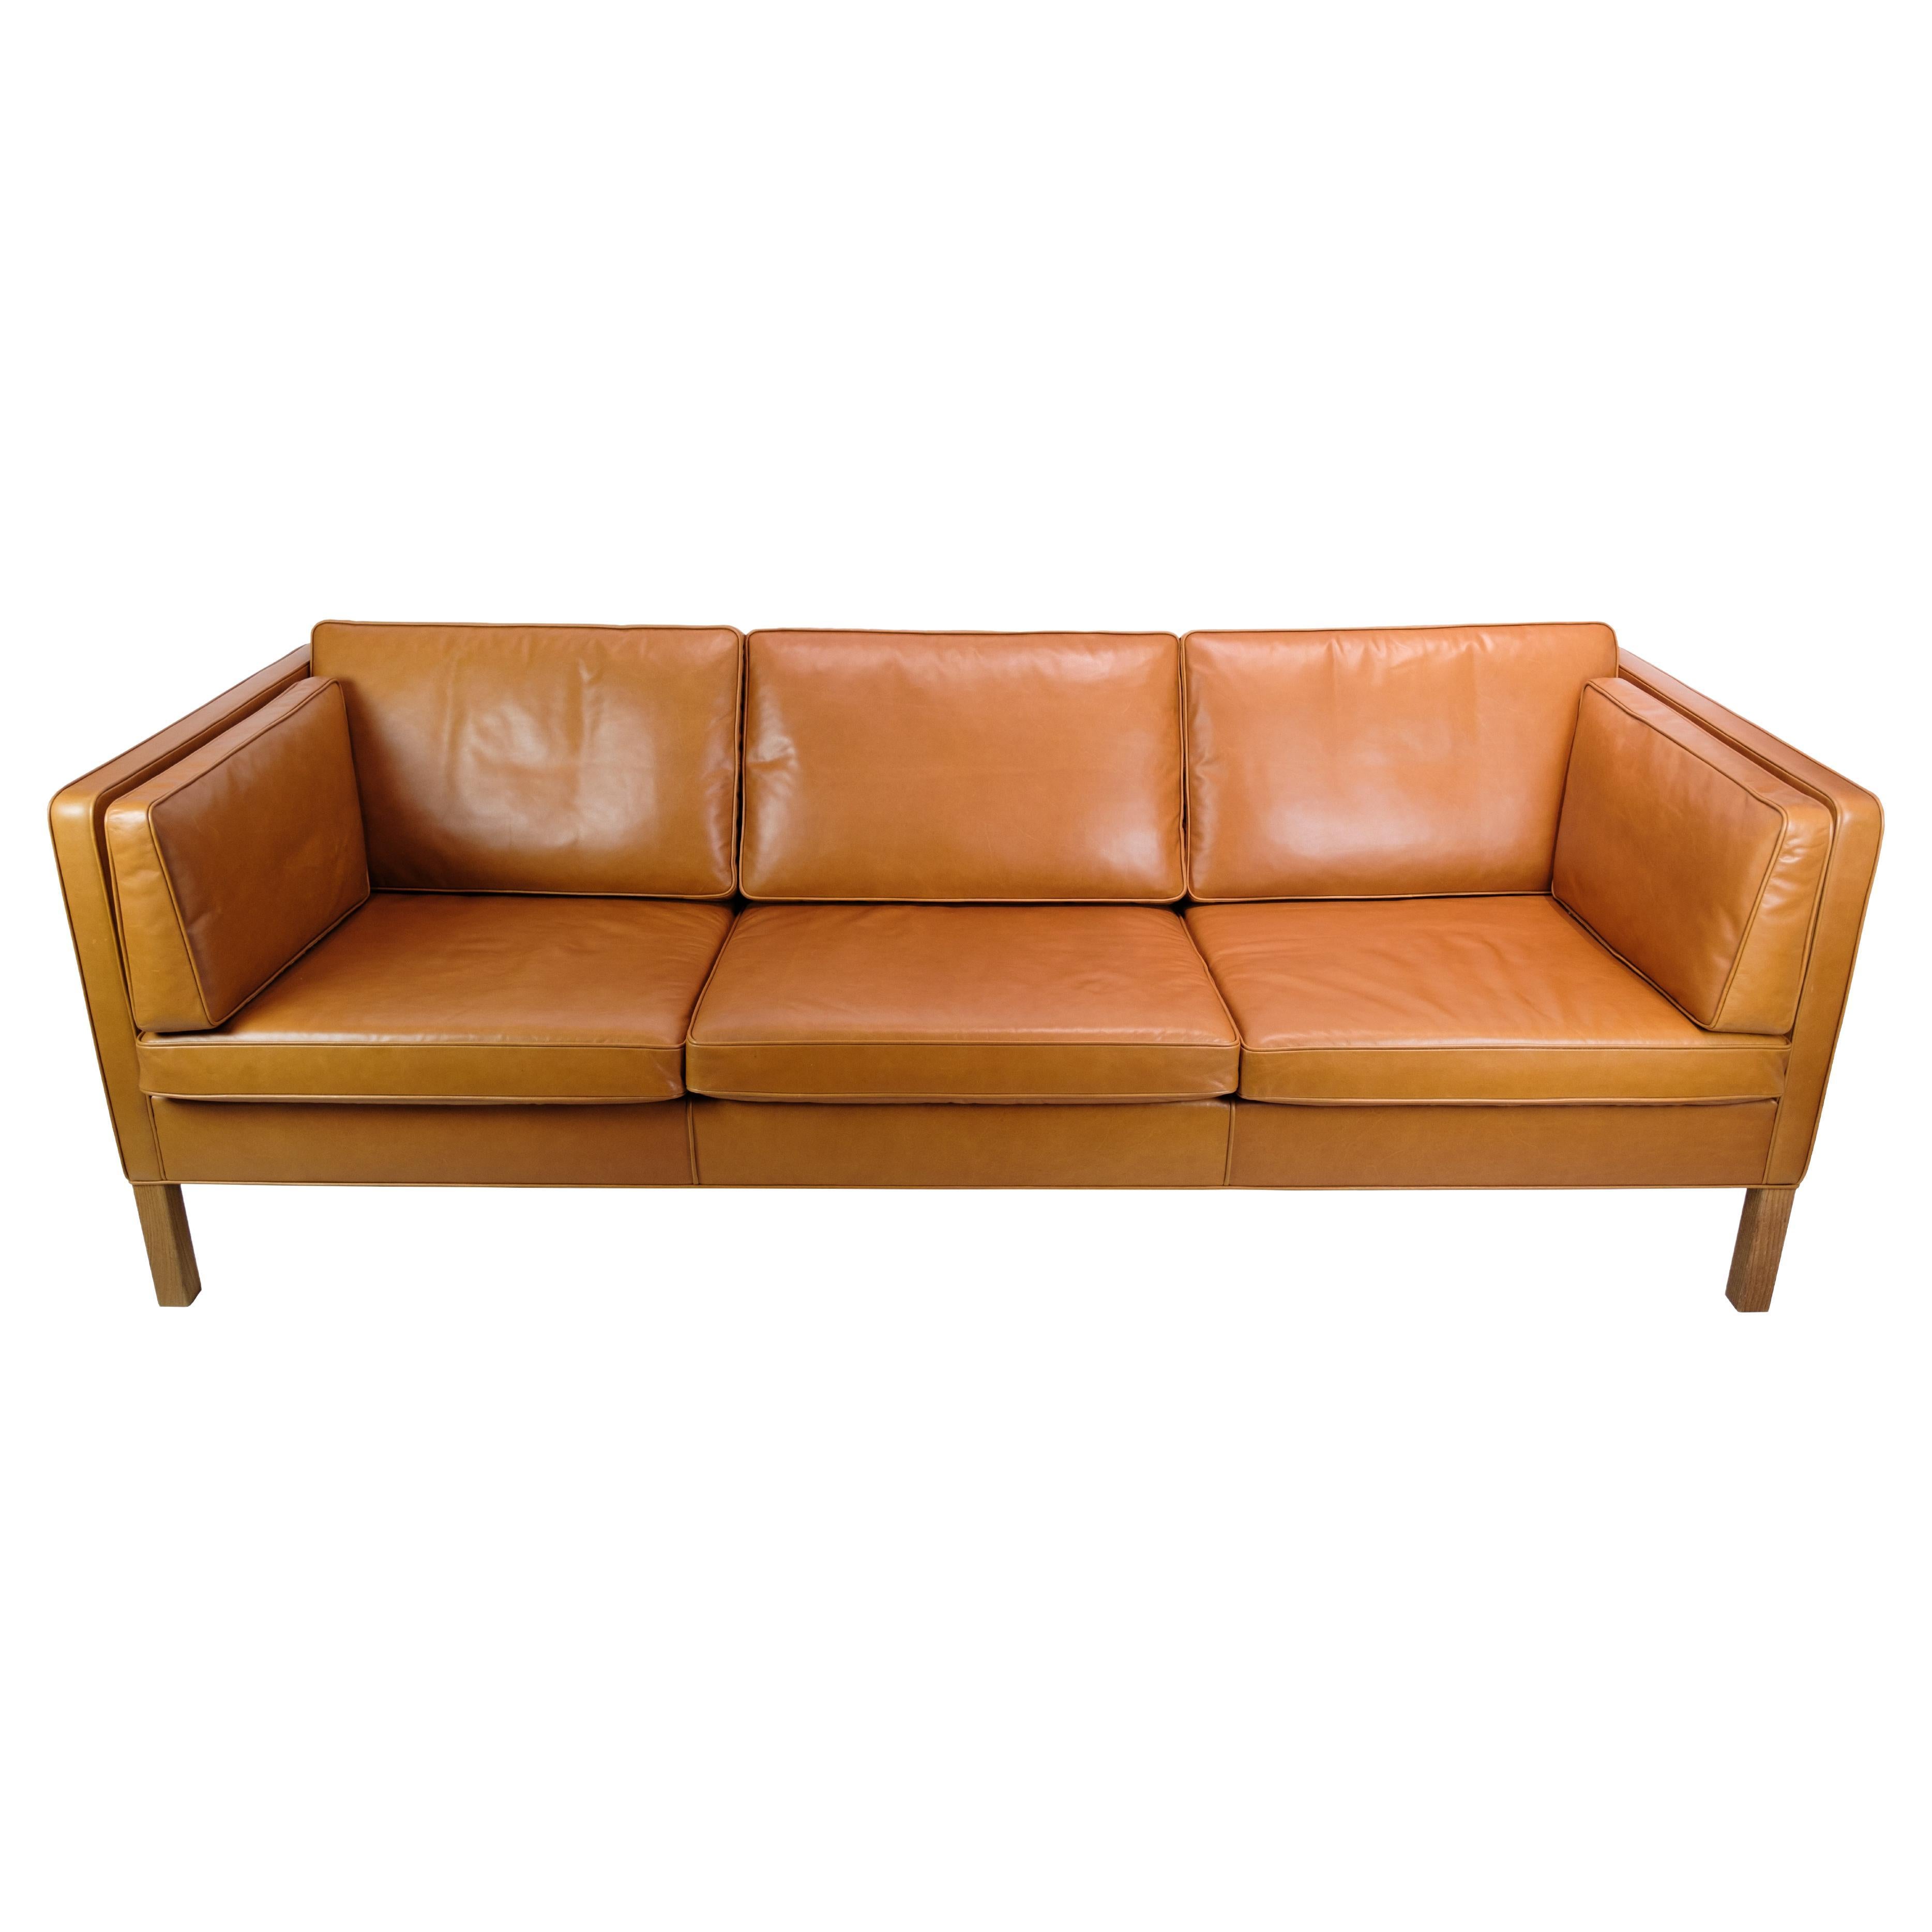 Dreisitziges Sofa aus cognacfarbenem Leder, Modell 2333 von Børge Mogensen aus den 1960er Jahren